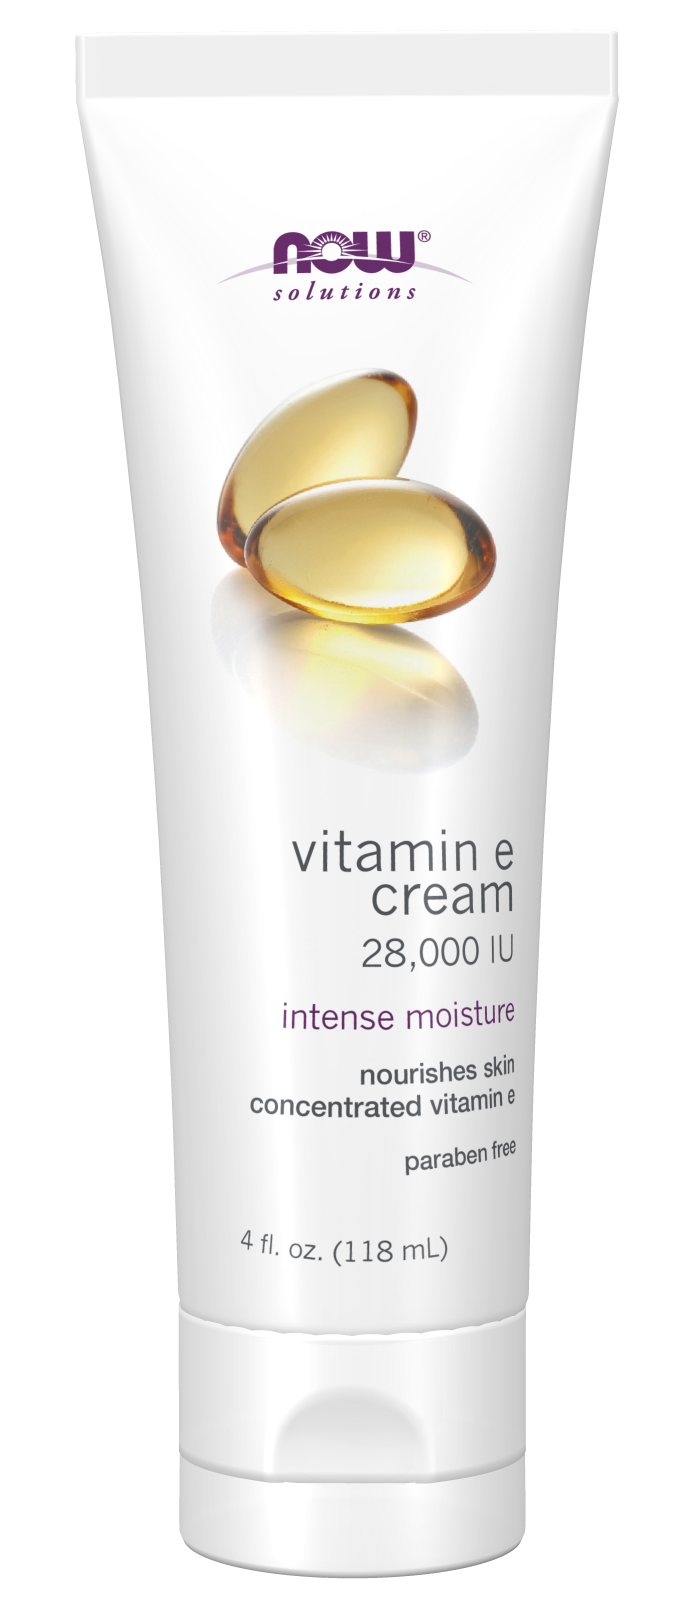 Vitamin E Cream 28,000 IU